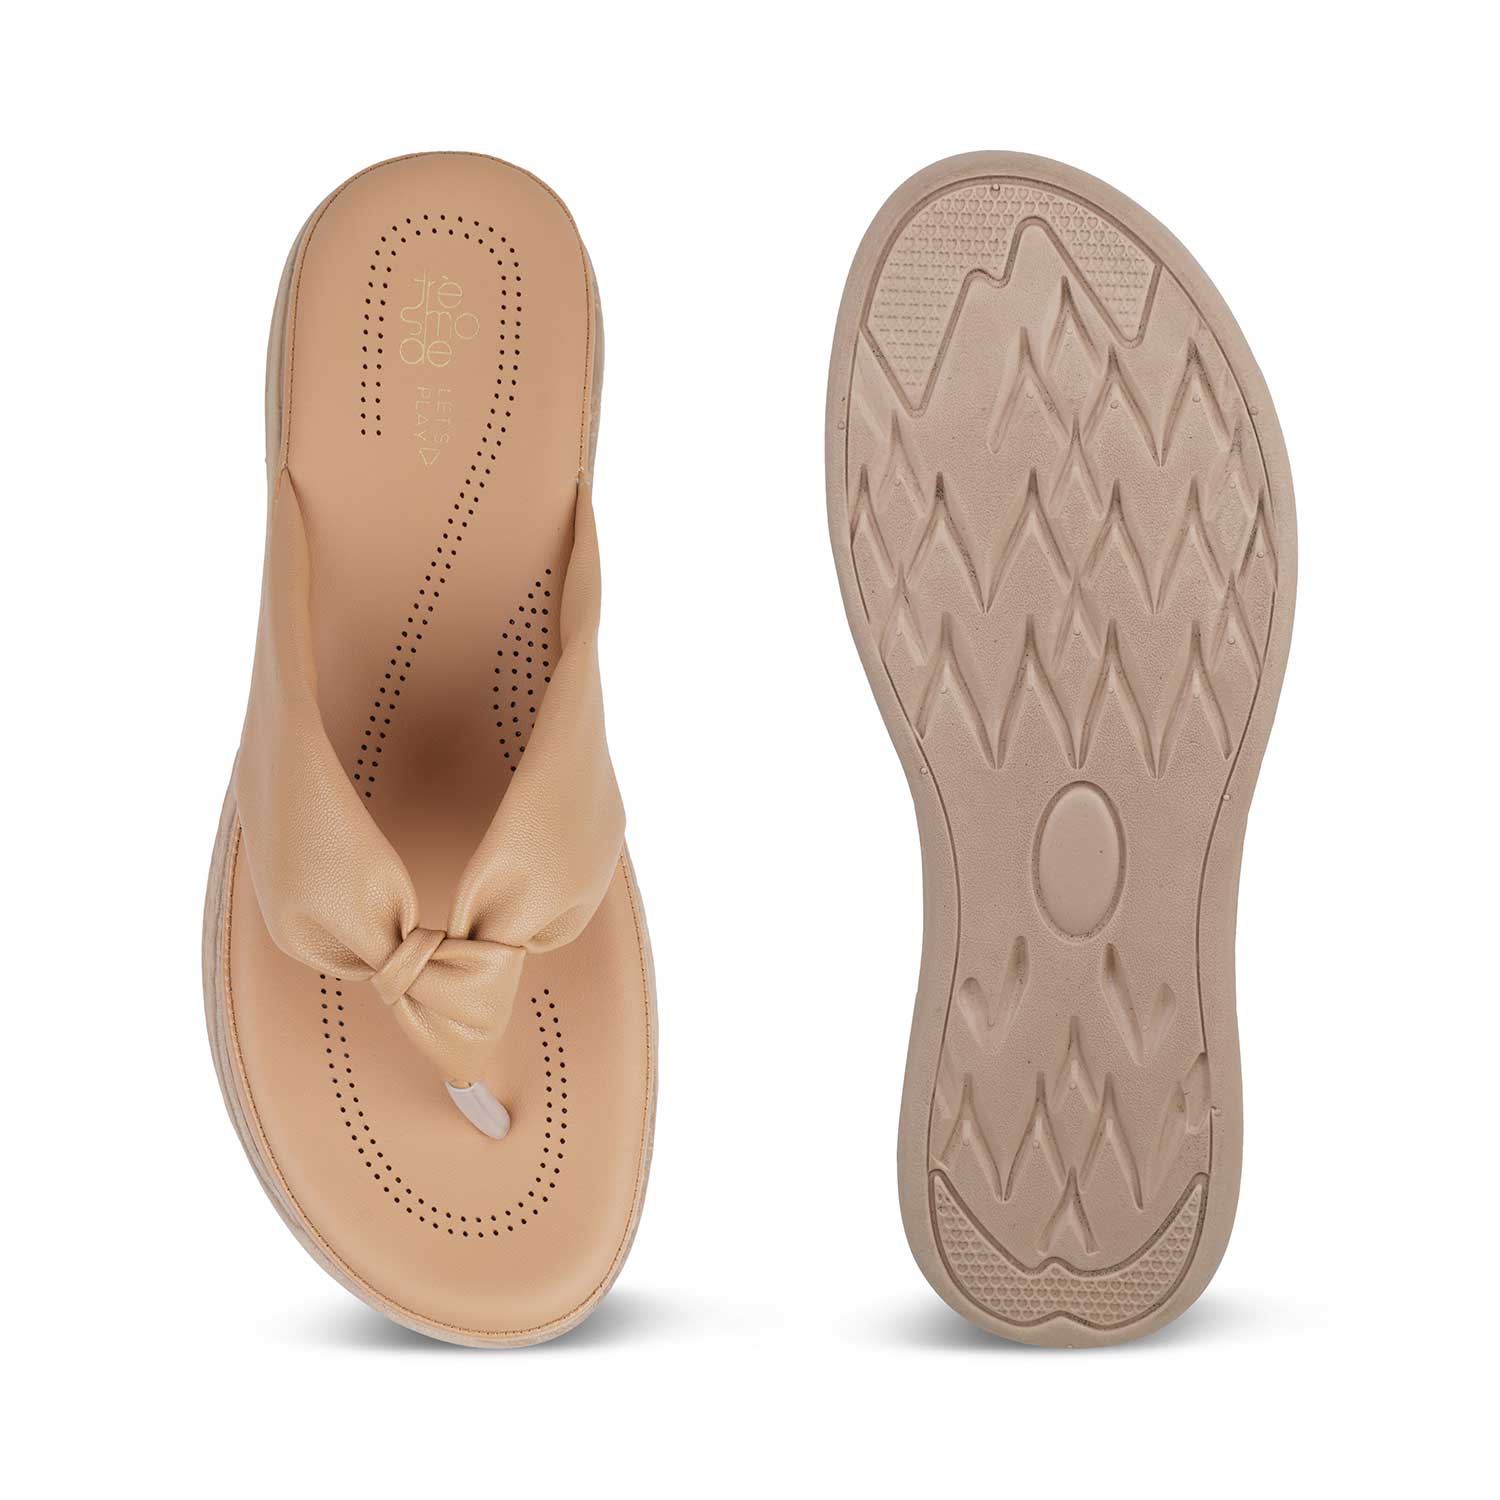 The Habi Beige Women's Casual Wedge Sandals Tresmode